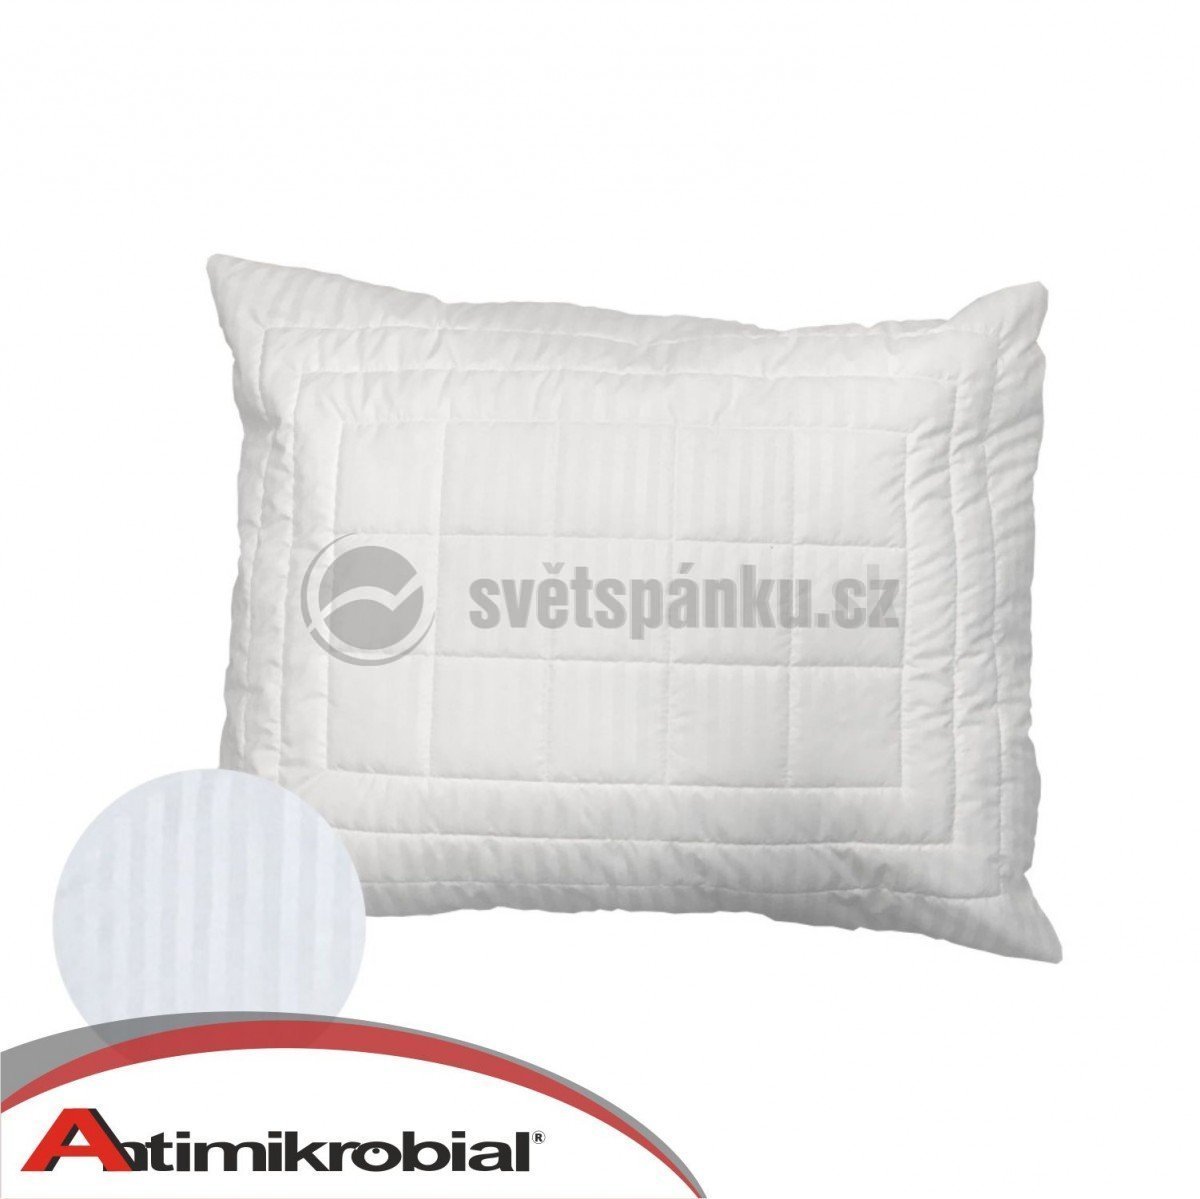 ochr-znacka-antimikrobial-vankus_w1200